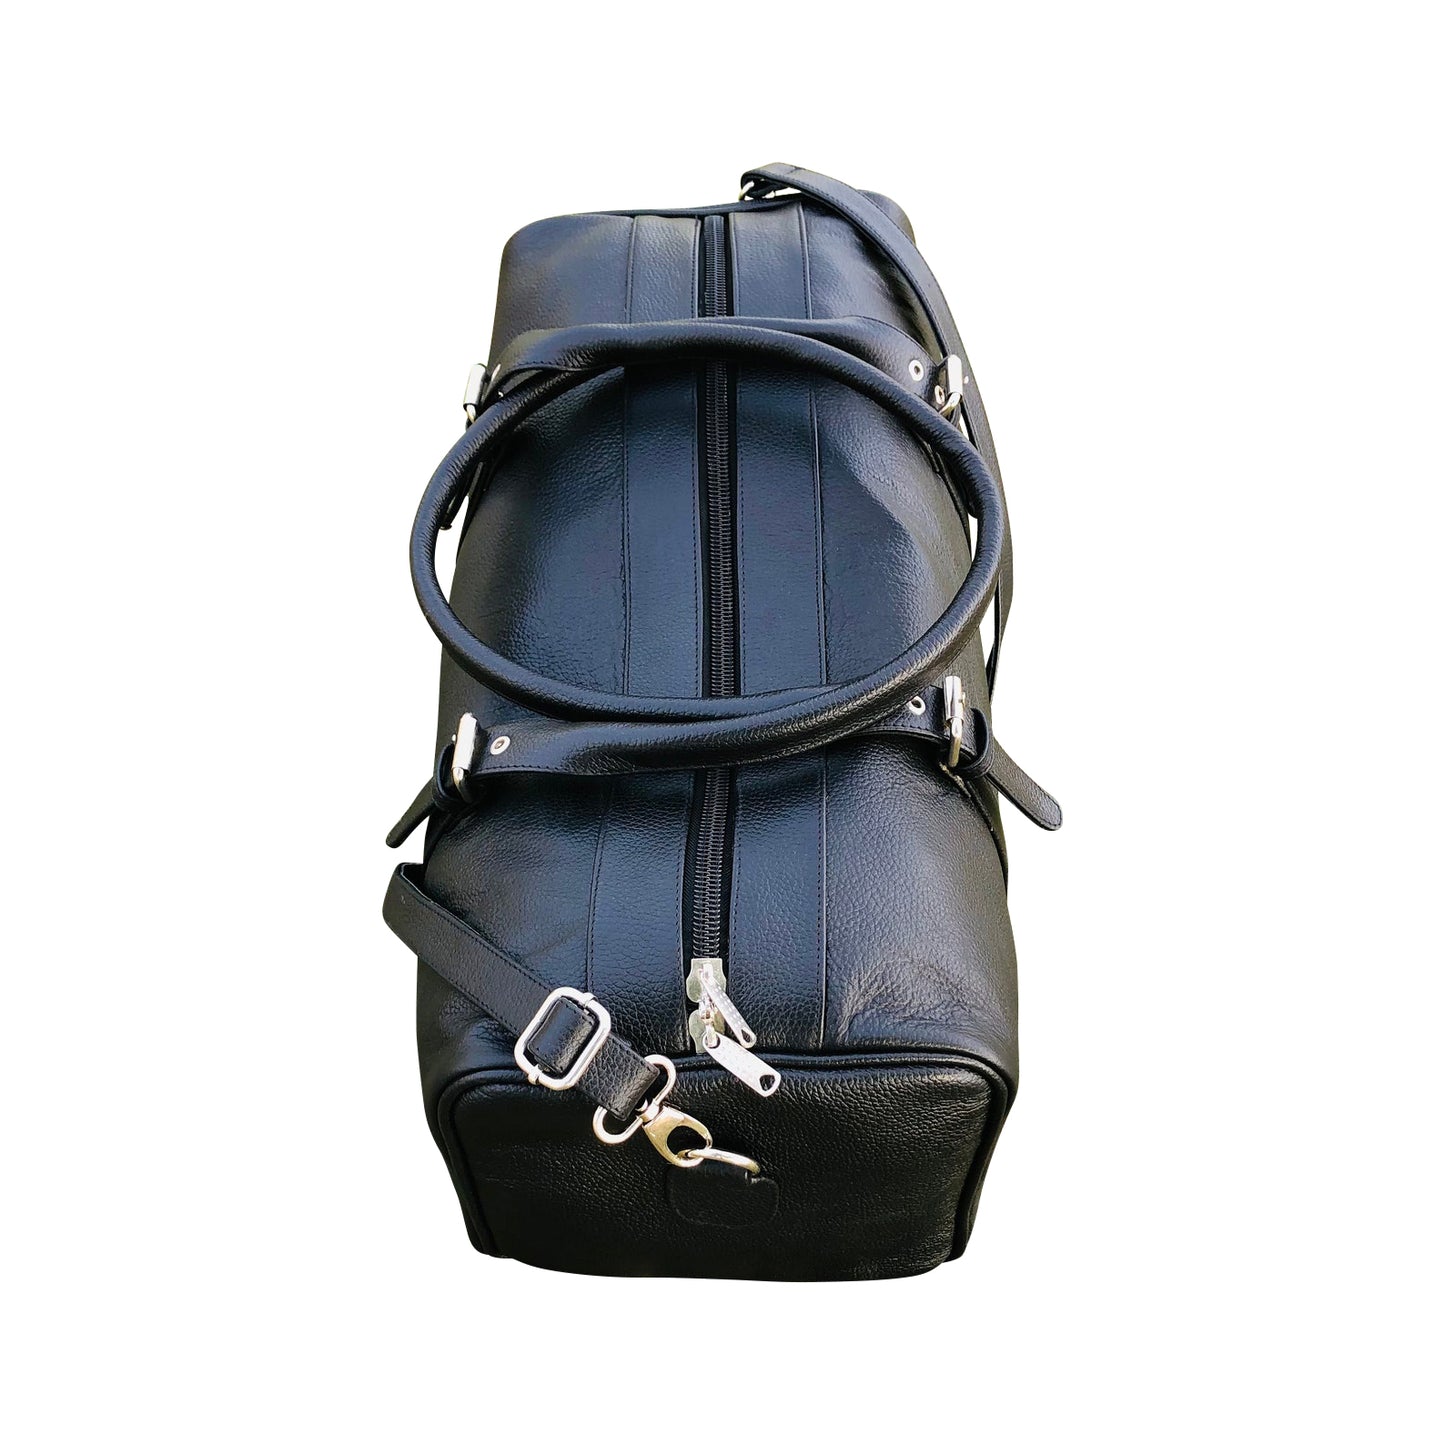 Premium Black Leather Weekender Bag